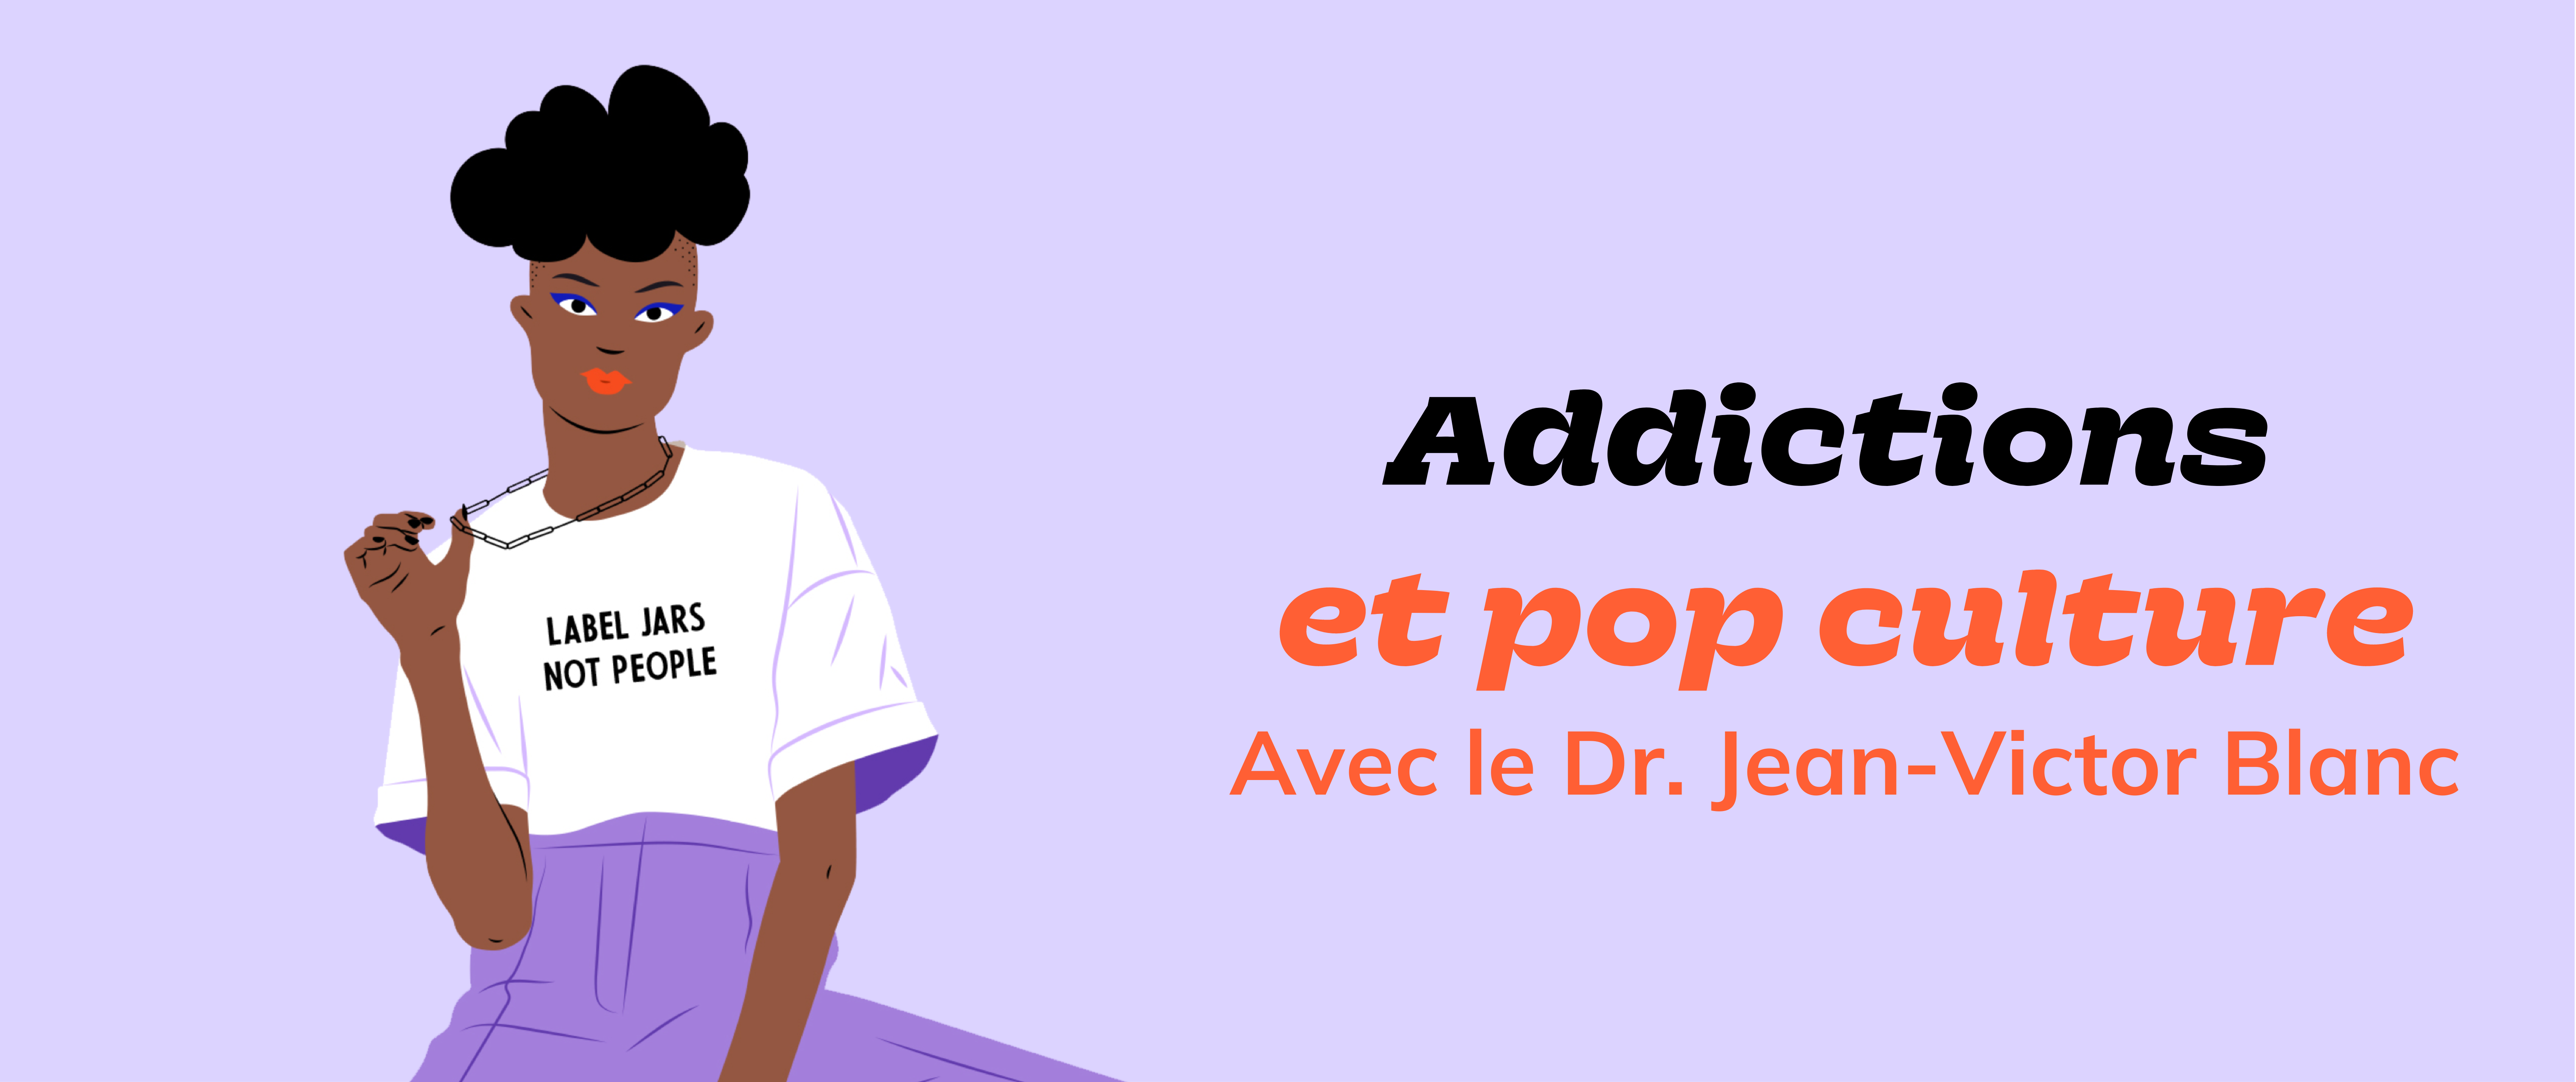 Addictions et pop culture : interview du Dr. Jean-Victor Blanc